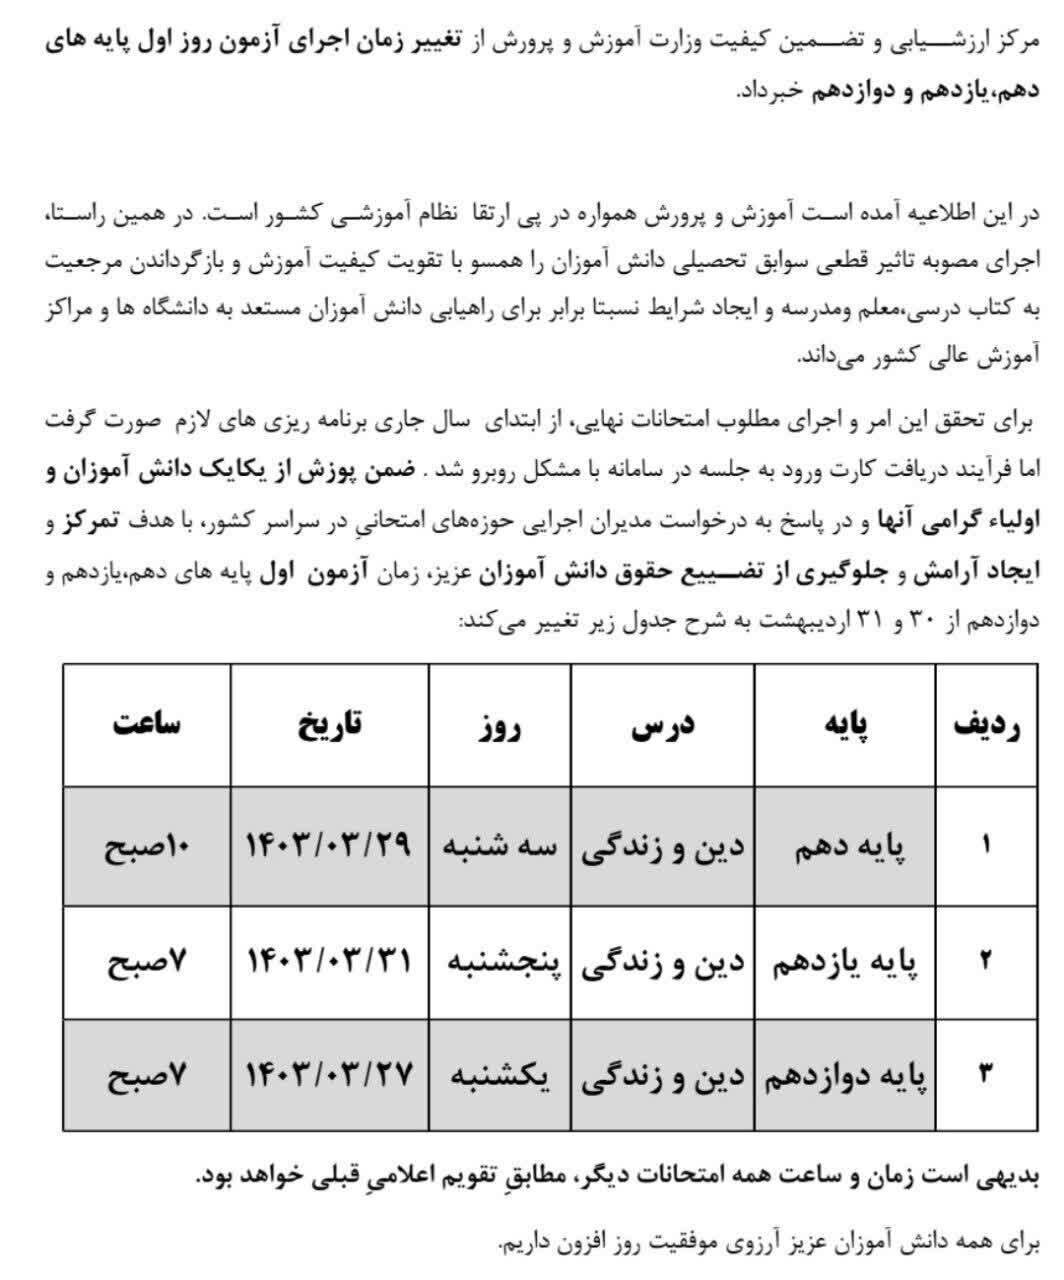 تاریخ جدید امتحانات نهایی لغو شده دانش آموزان توسط وزارت آموزش و پرورش اعلام شد (جدول)